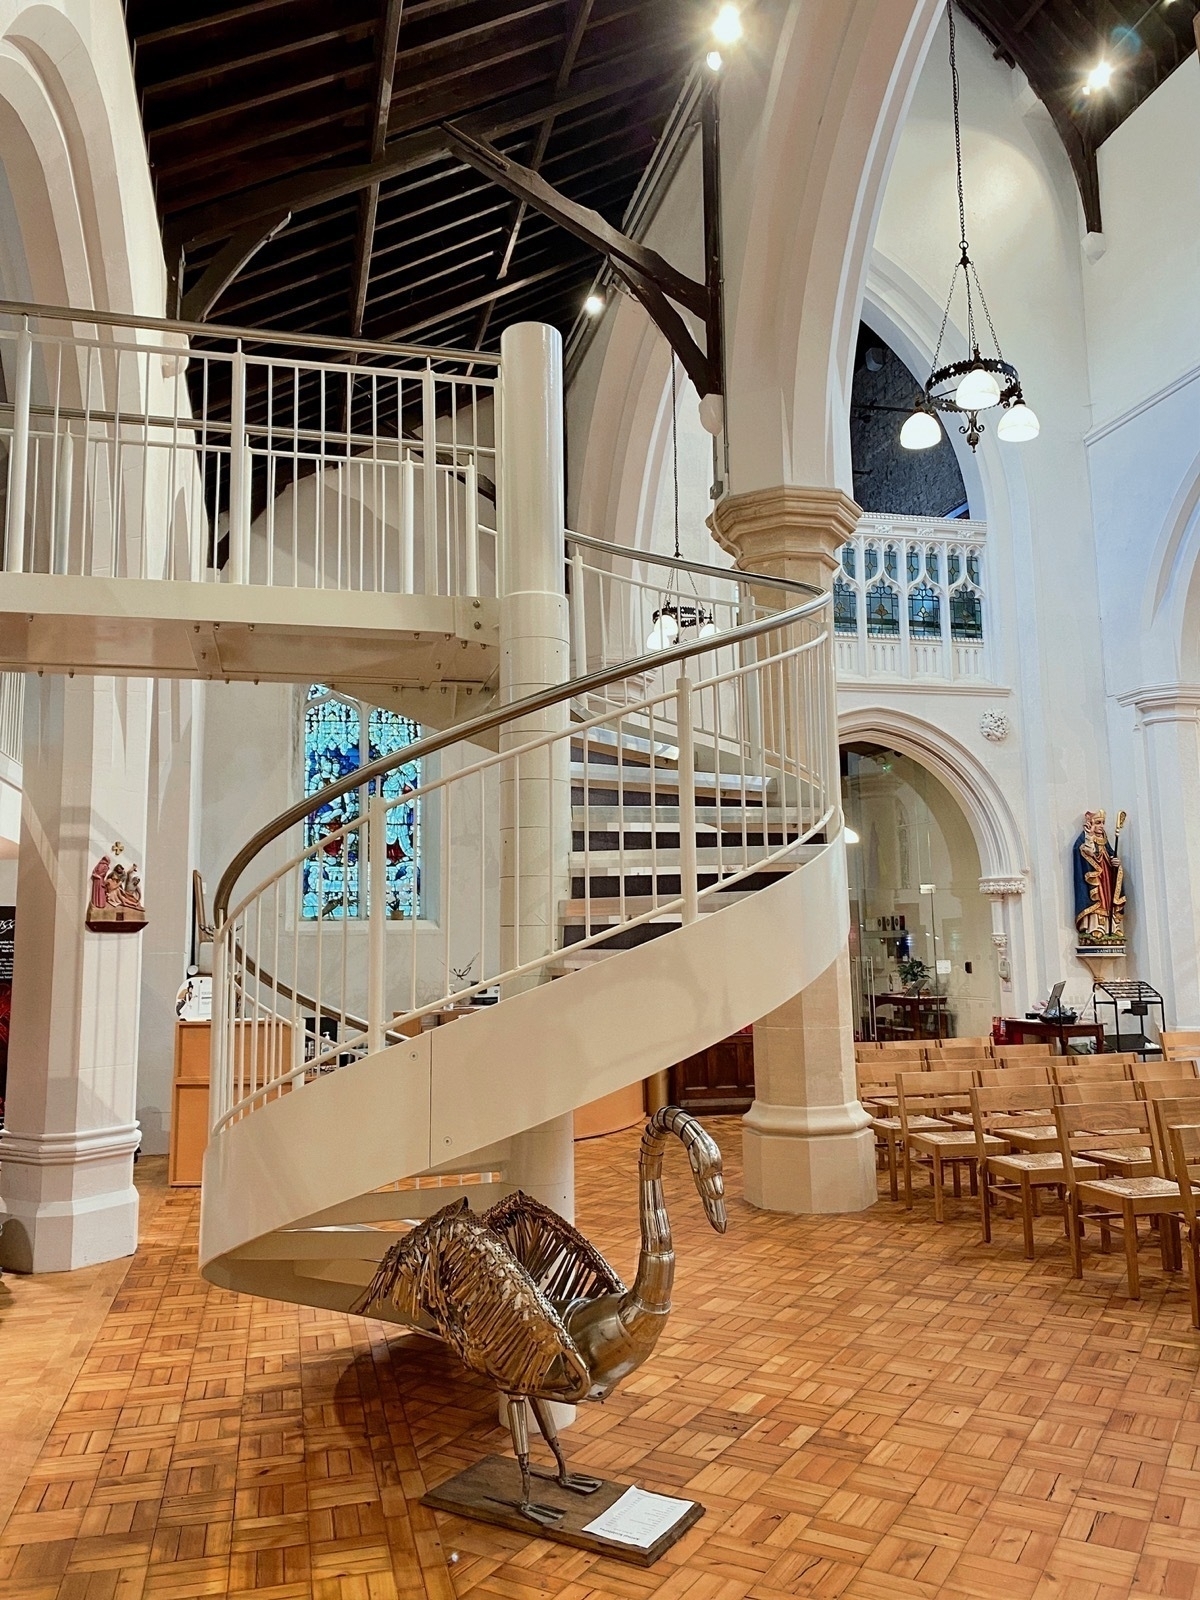 Spiral steel stairway in a church